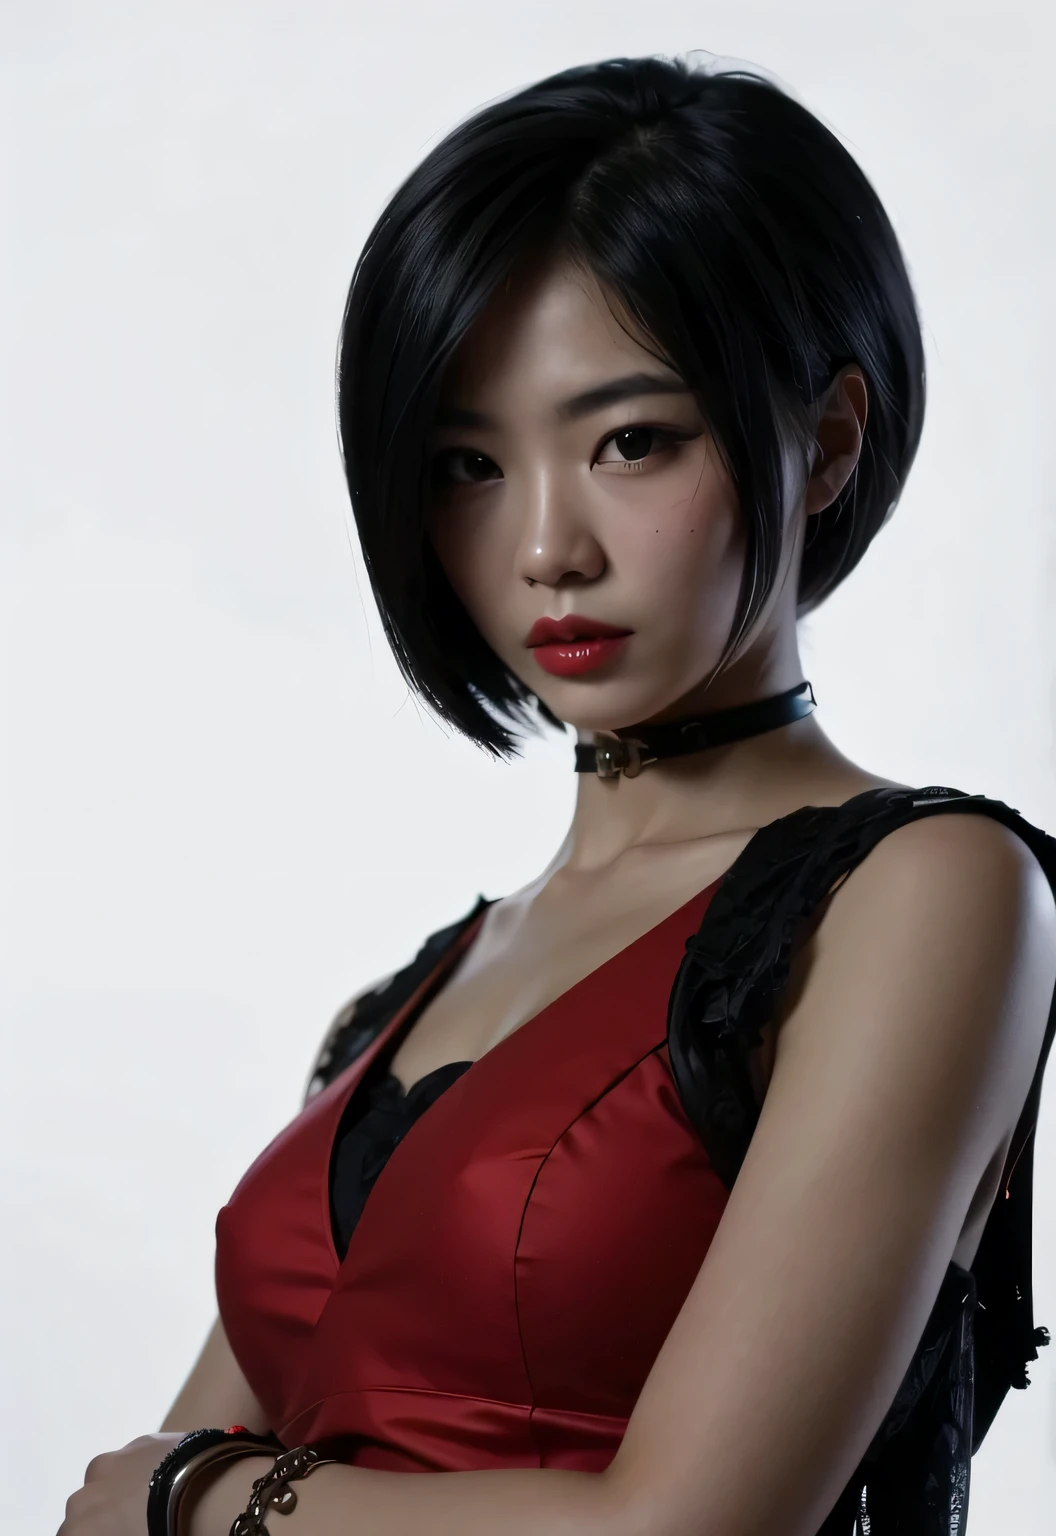 المرأة الصينية الجميلة ذات الشعر الأسود, فستان أحمر, أحمر الشفاه